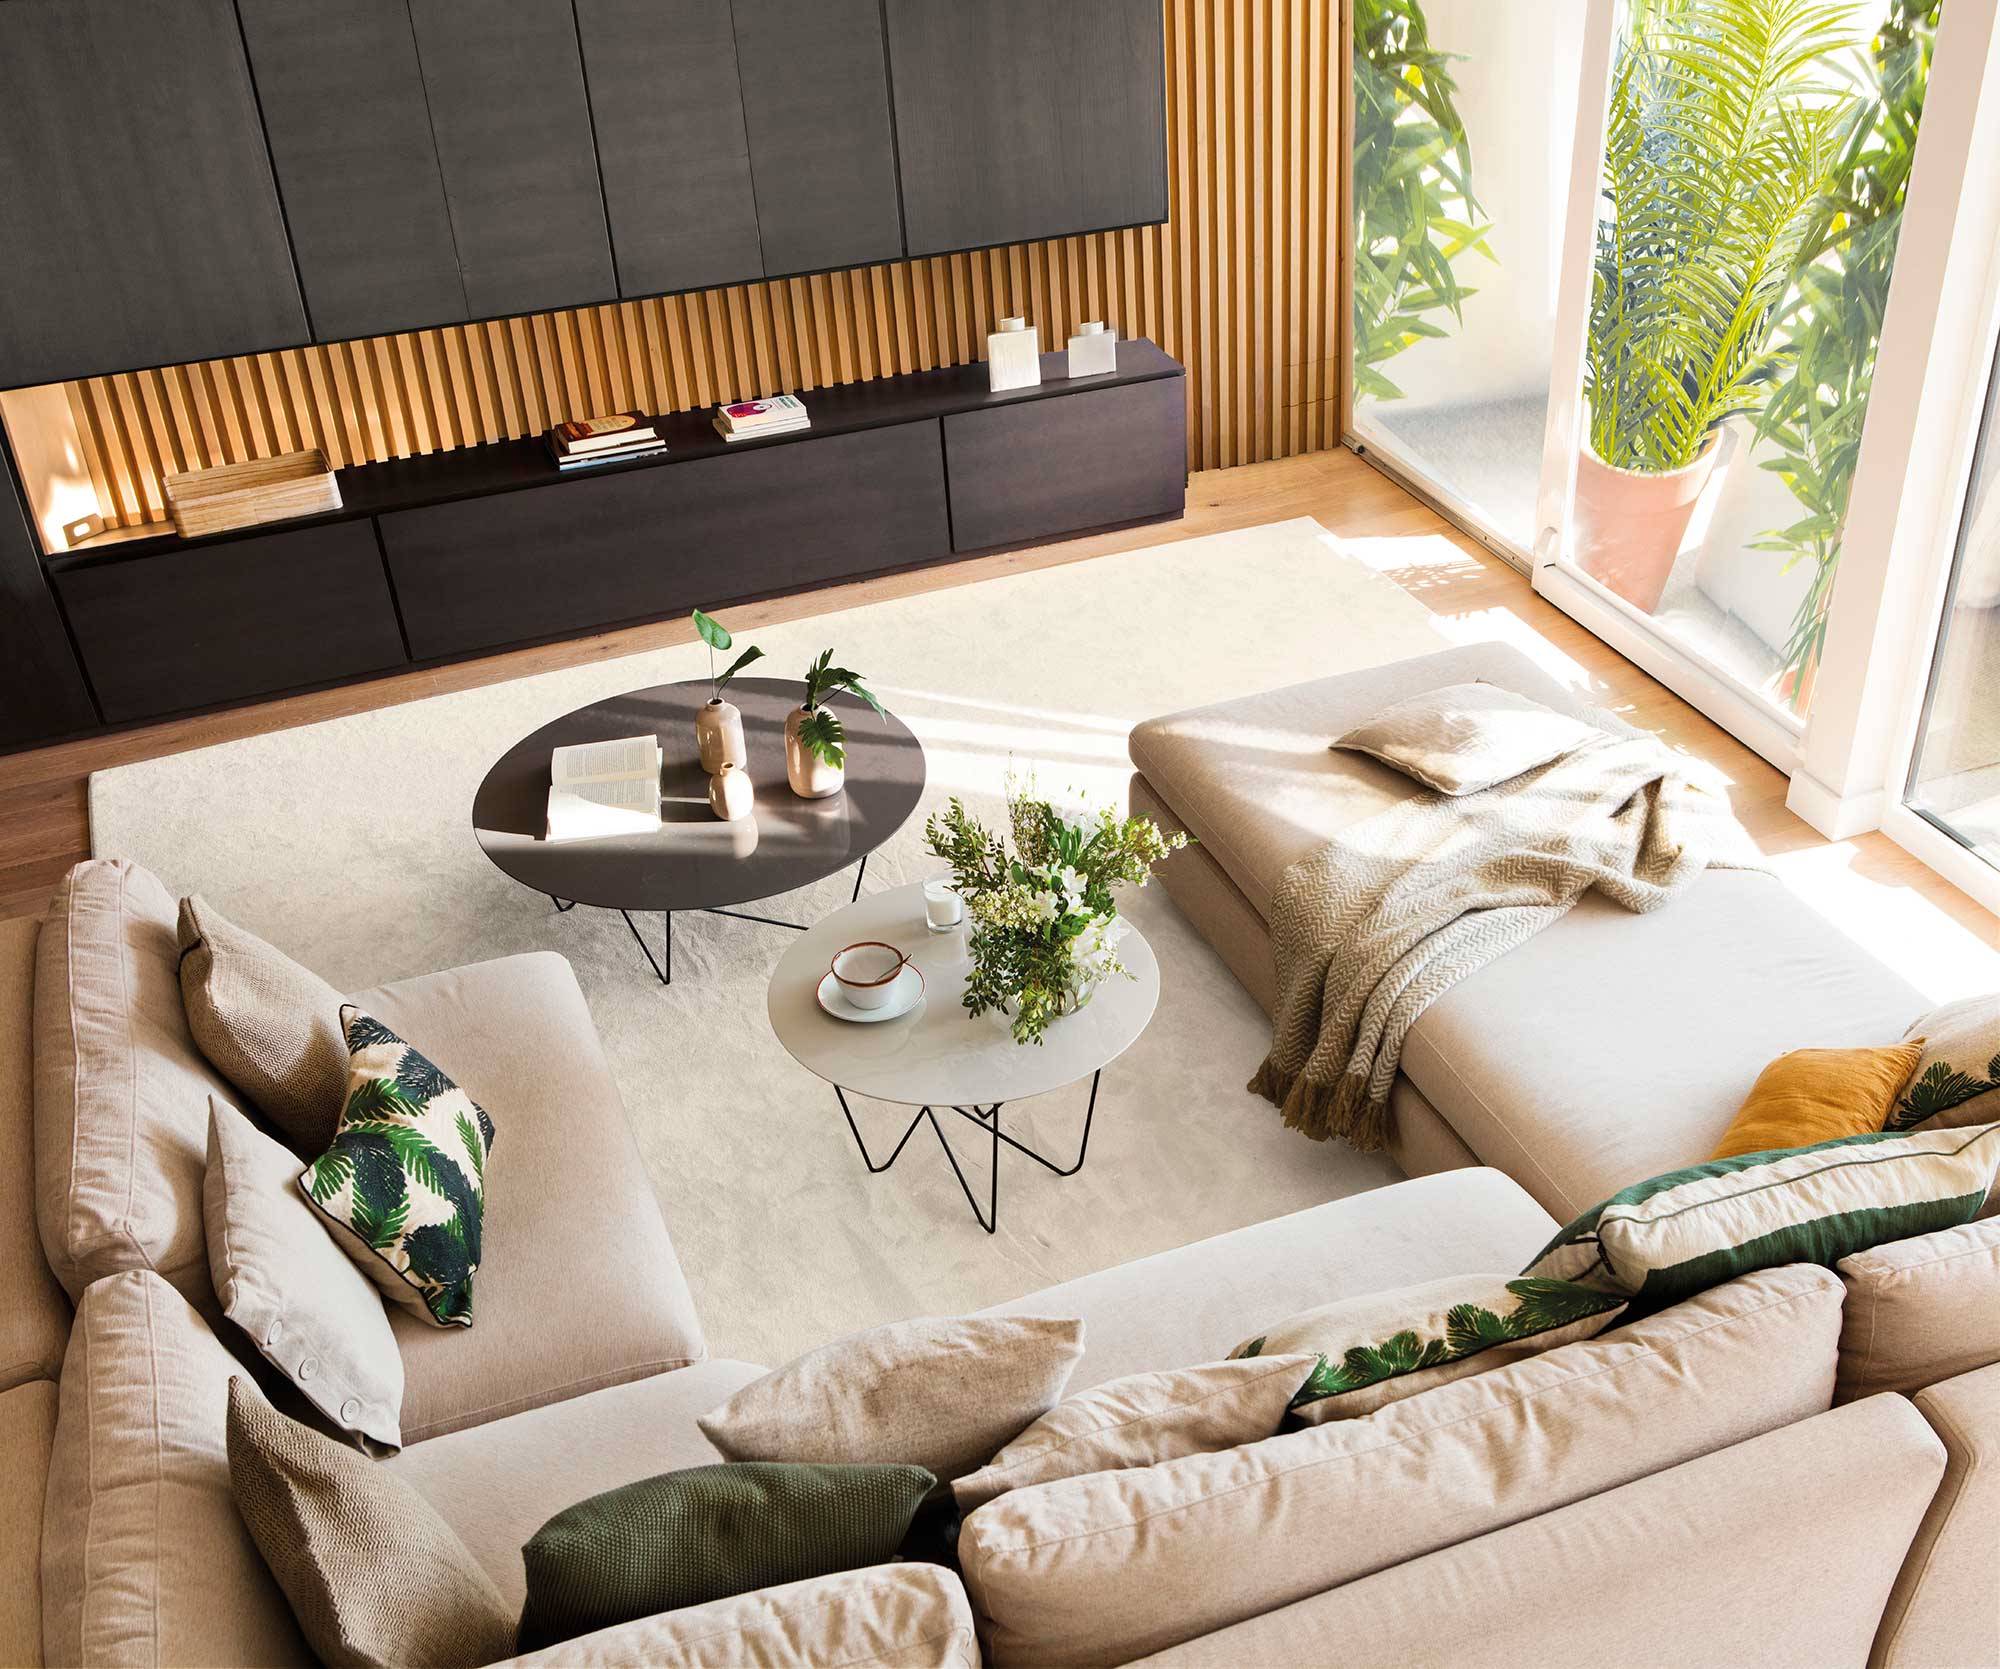 Vista cenital de salón con sofá modular y mueble del salón de madera y negro.